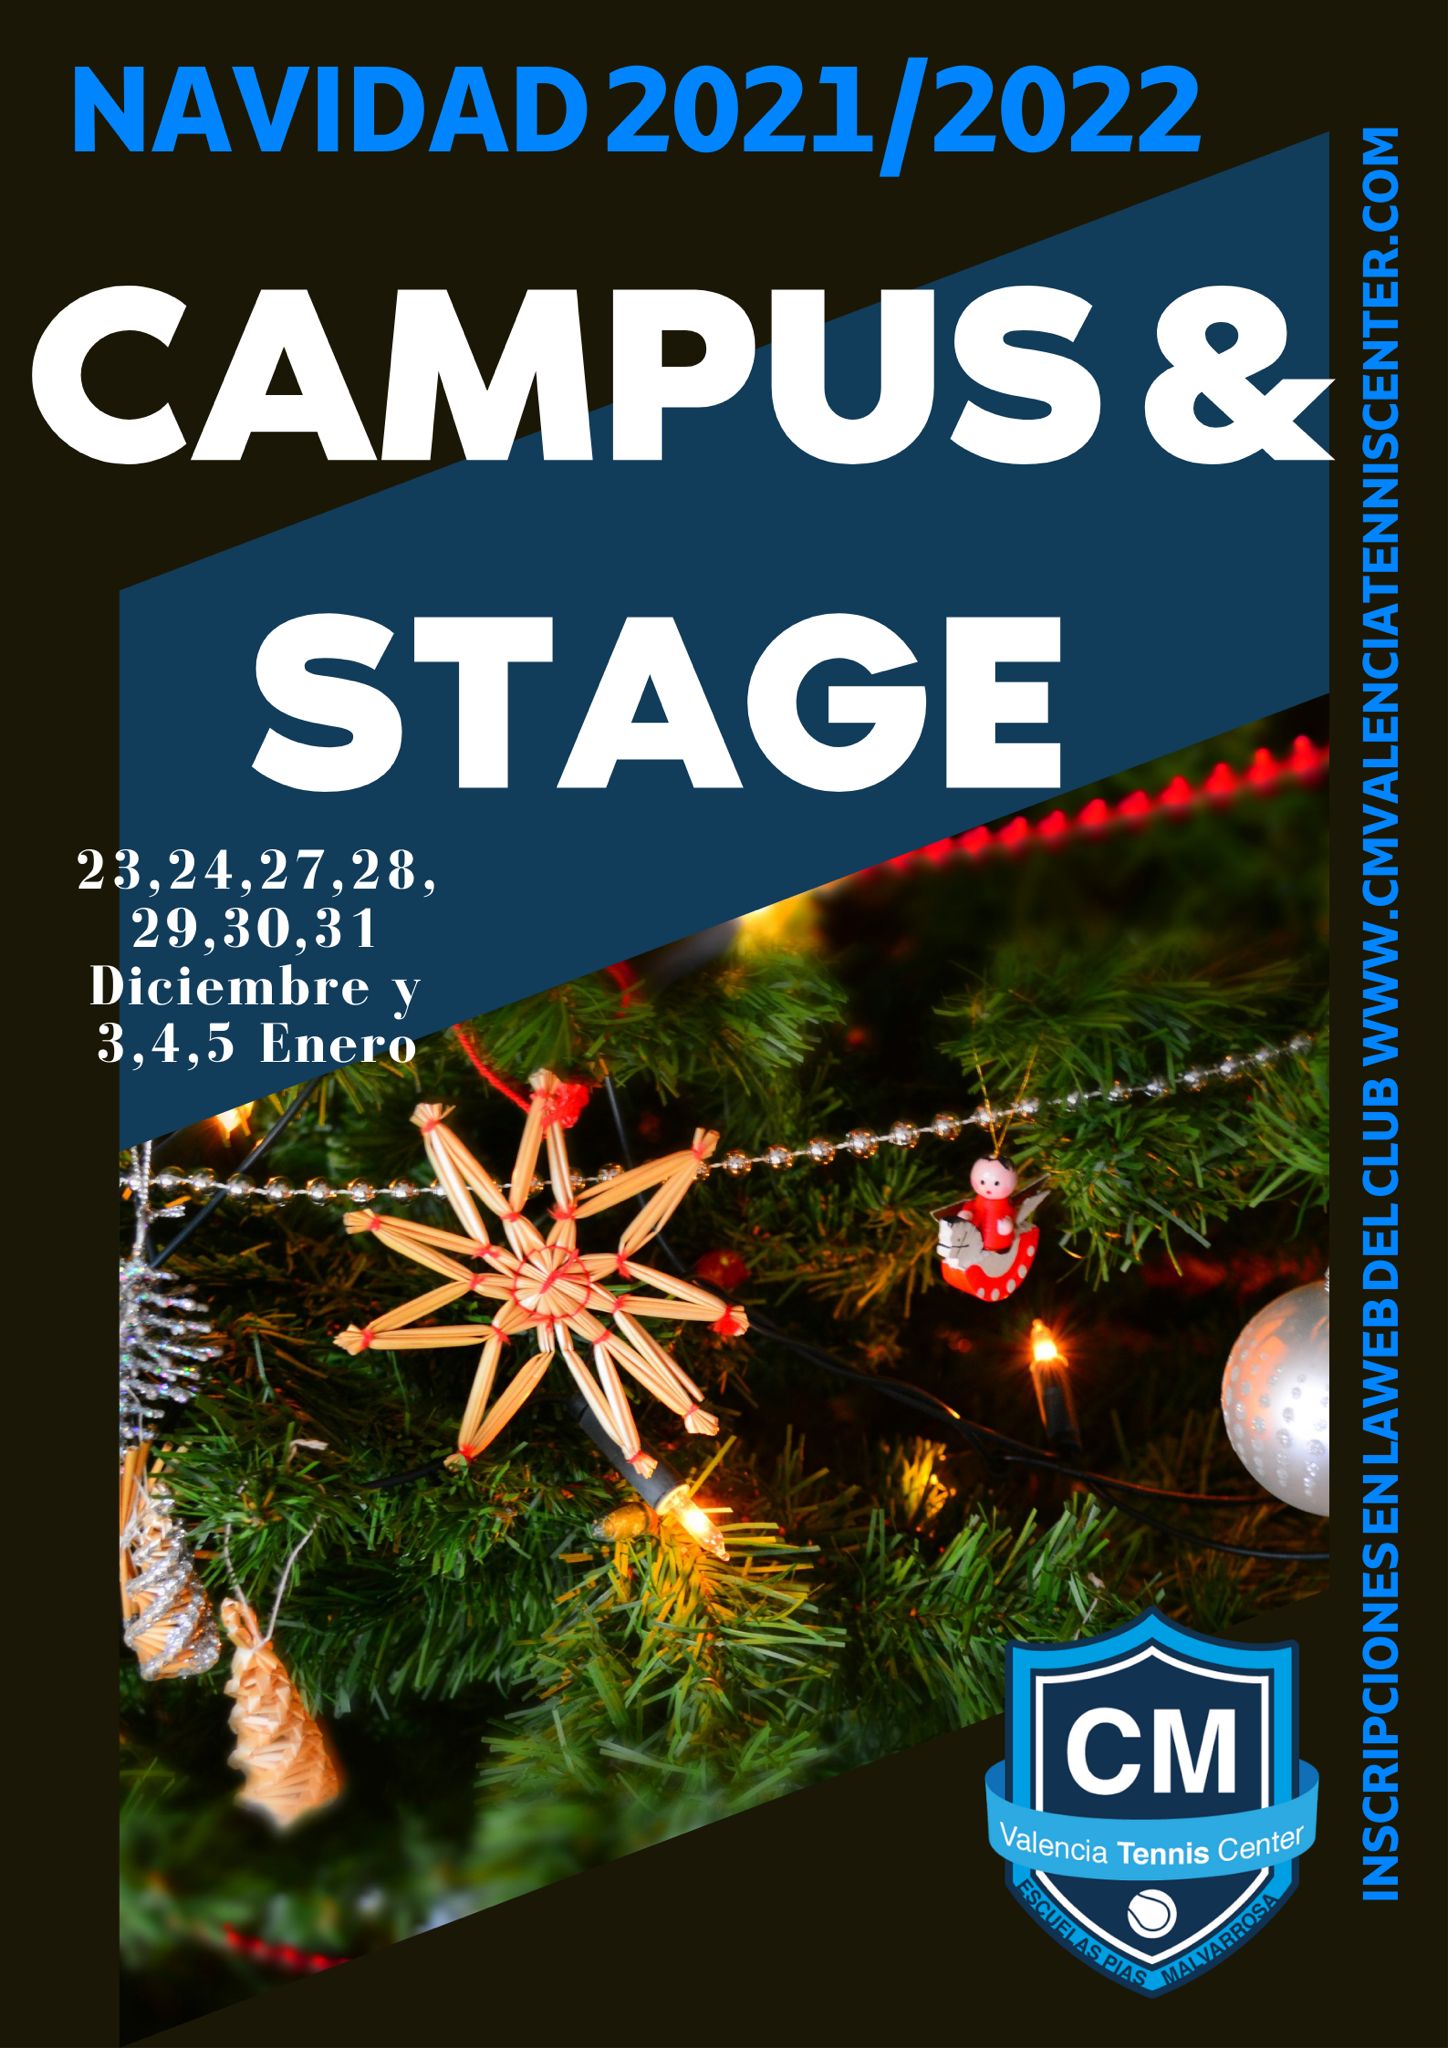 Campus de Navidad 2021/22